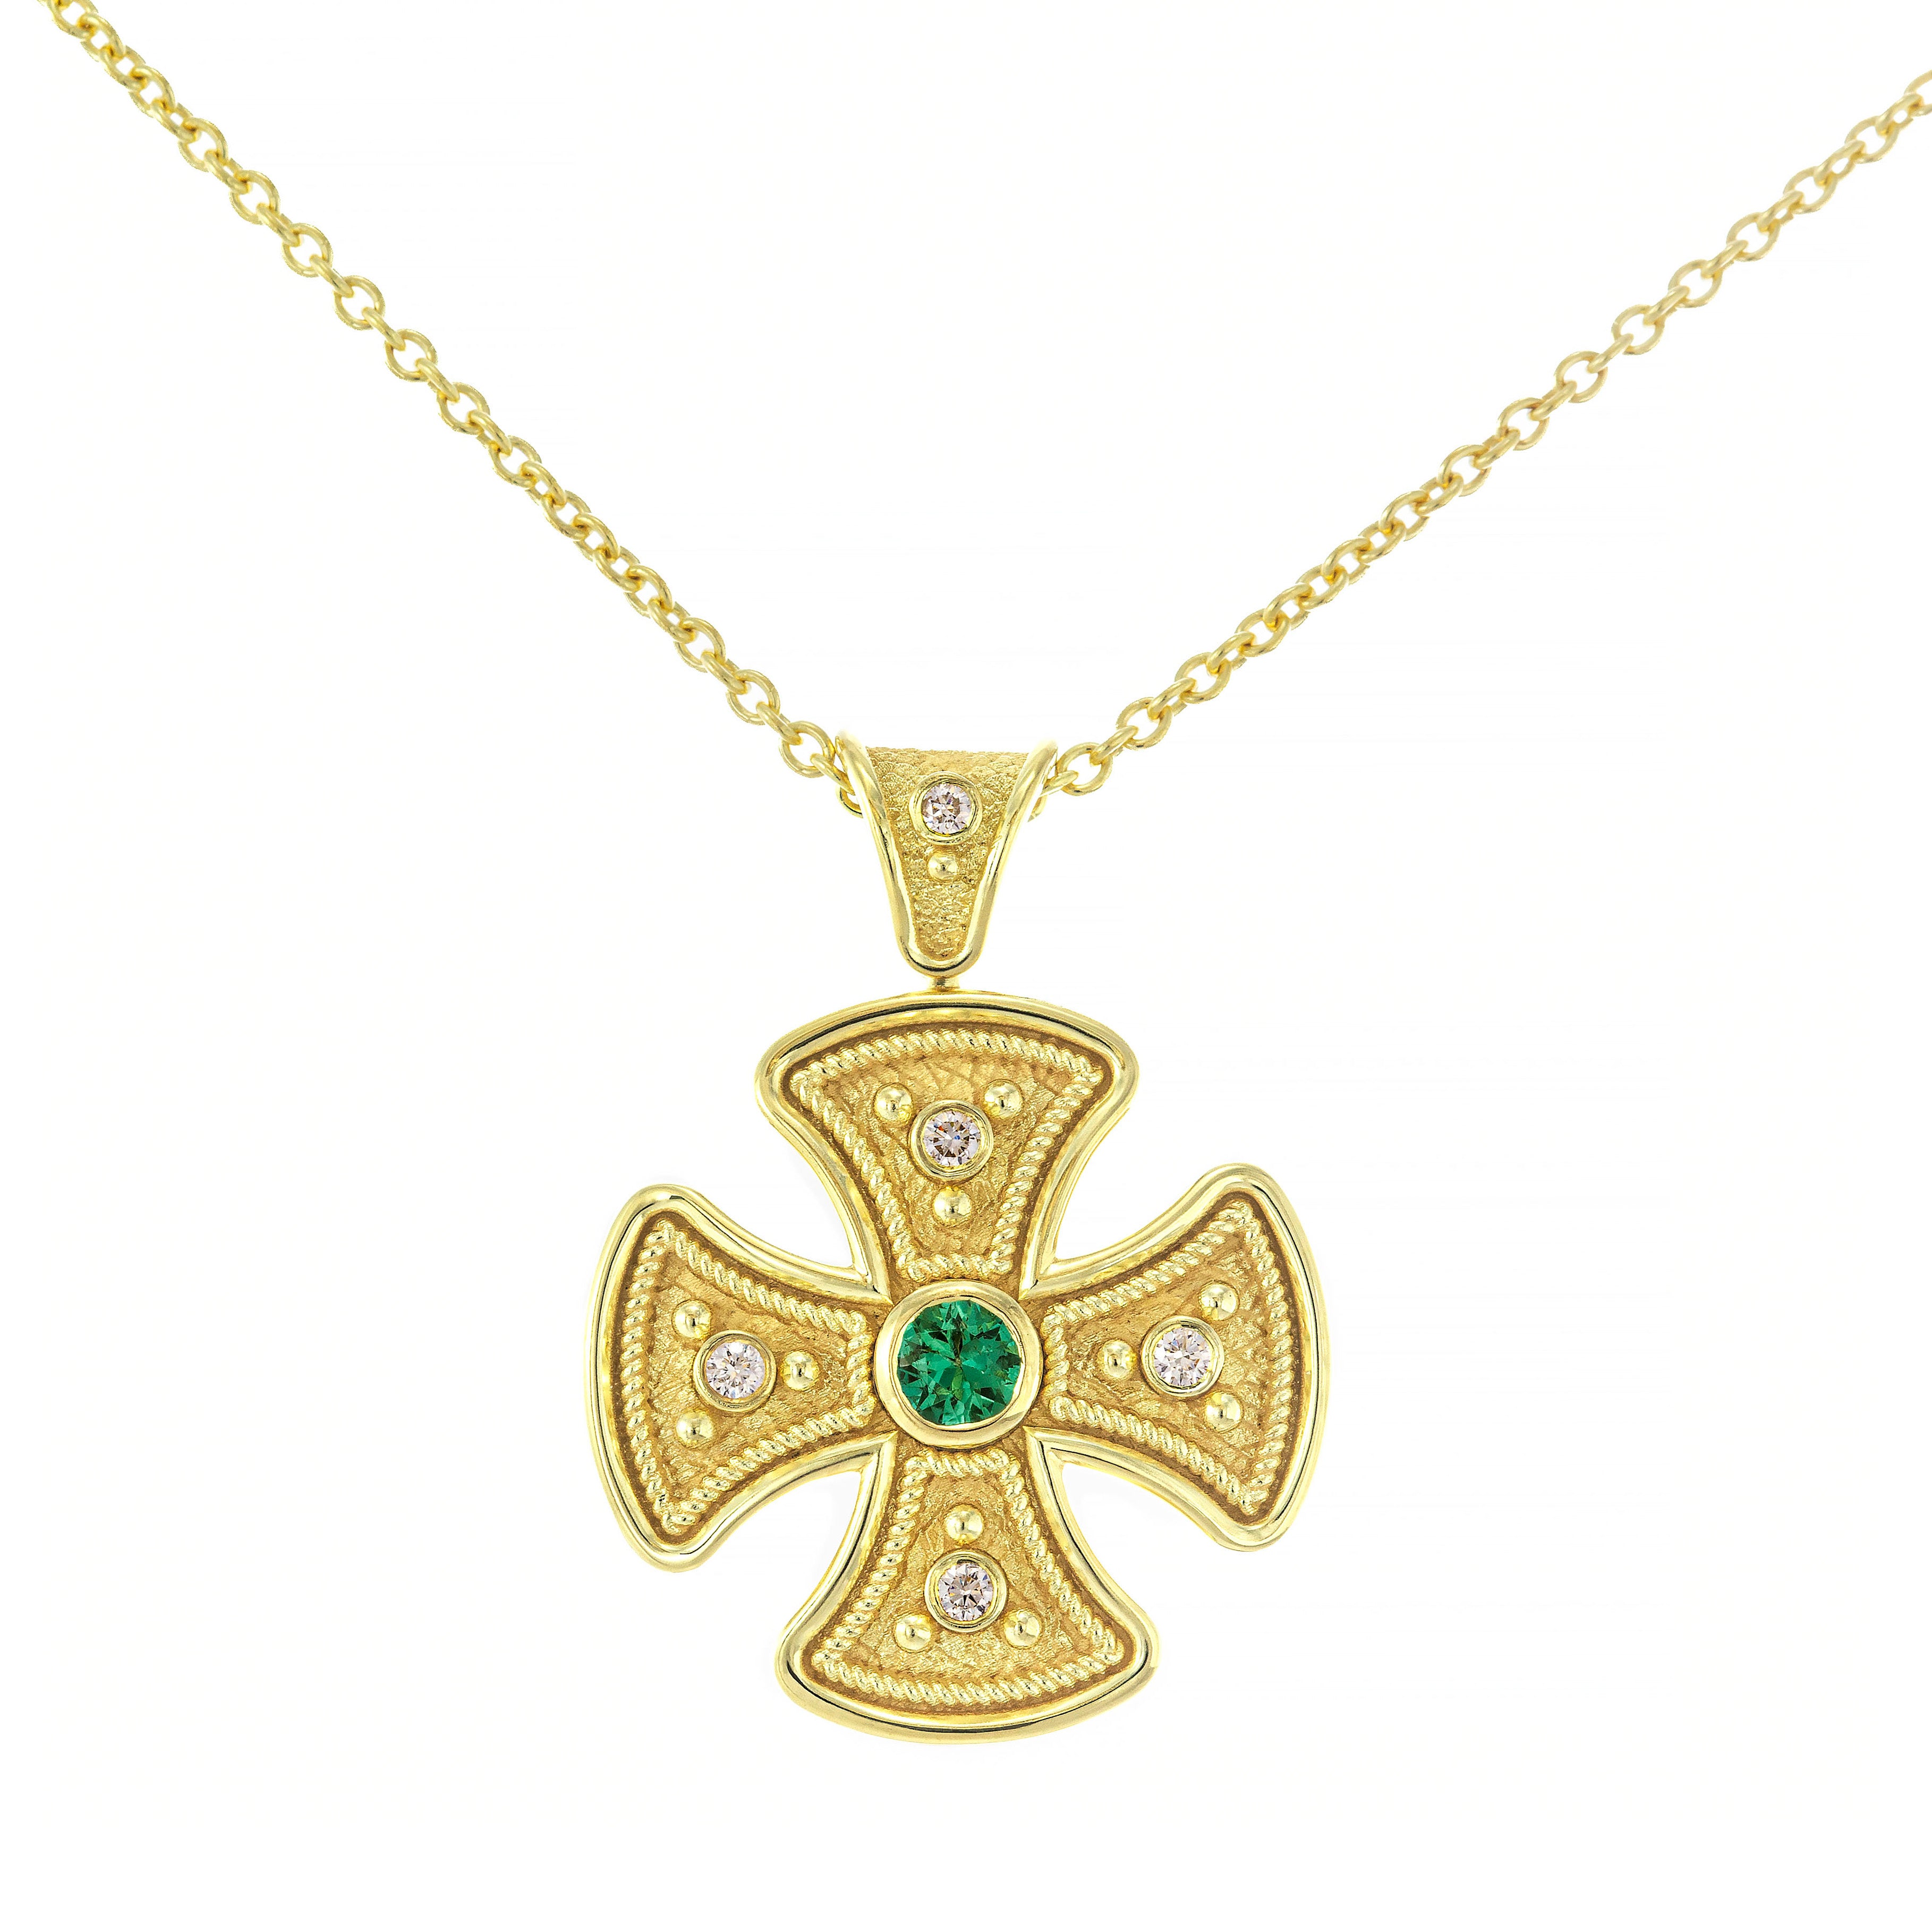 Byzantine Round Cross Pendant with Emerald and Diamonds Odysseus Jewelry